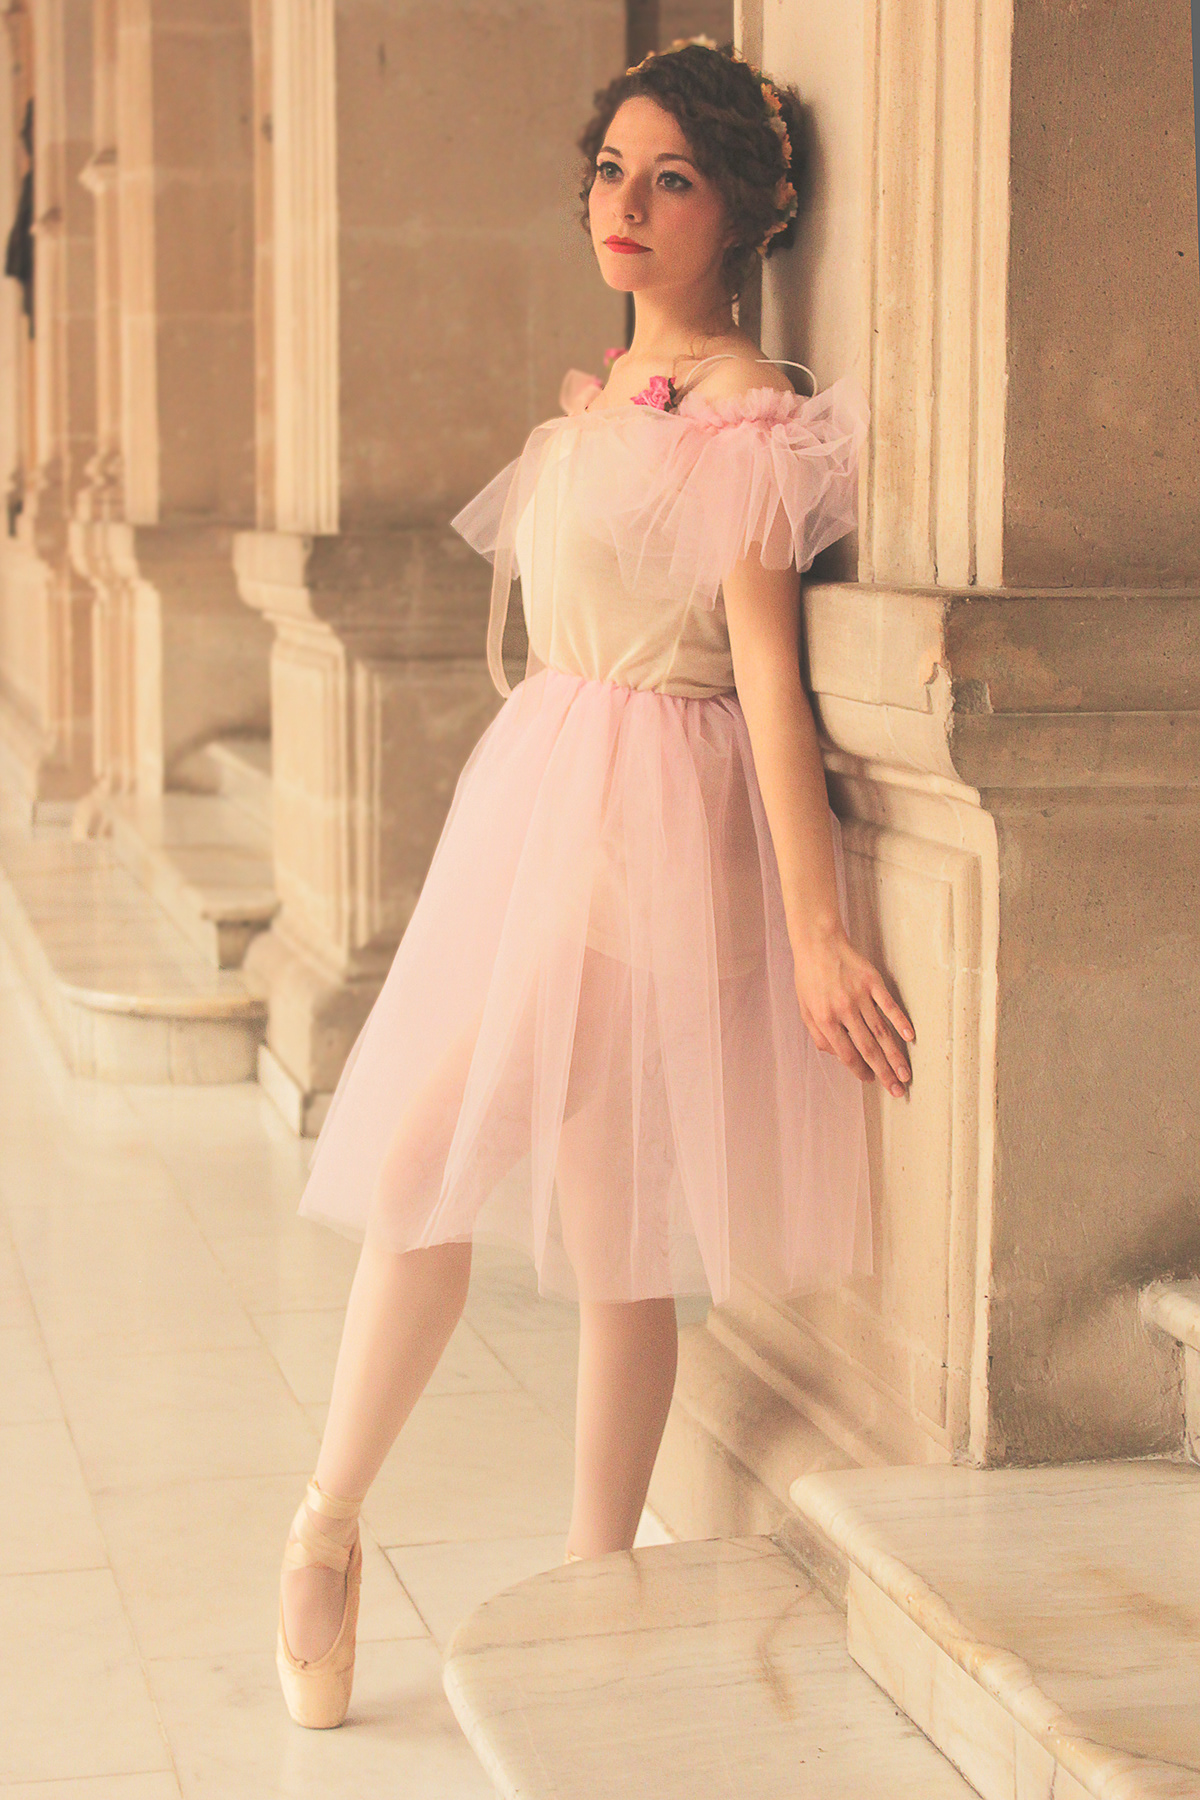 ballet ballet dancer tutu ballerina dress ballet dress cute ballerina ballet photoshoot chihuahua Arely Flores  palacio de gobierno